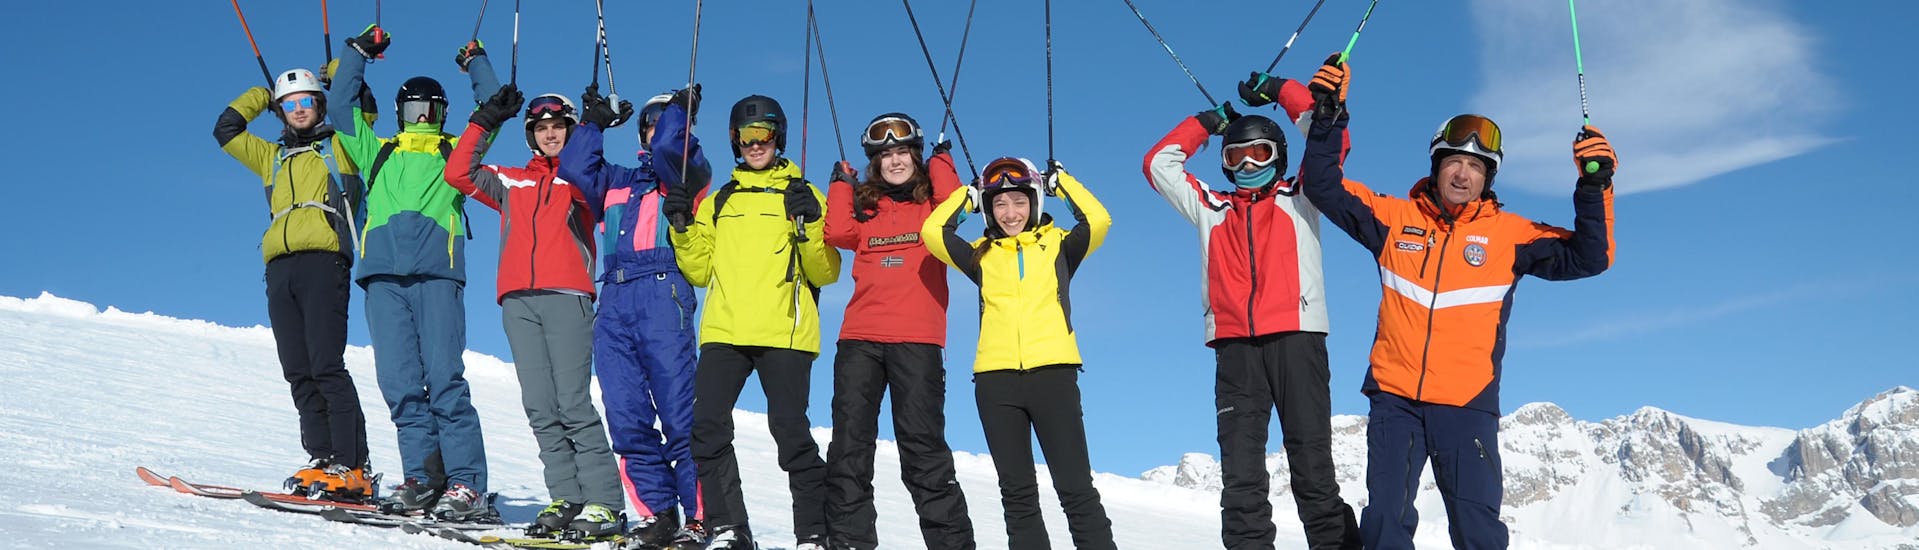 Partecipanti felici a Falcade durante una delle lezioni di sci per adulti di tutti i livelli.